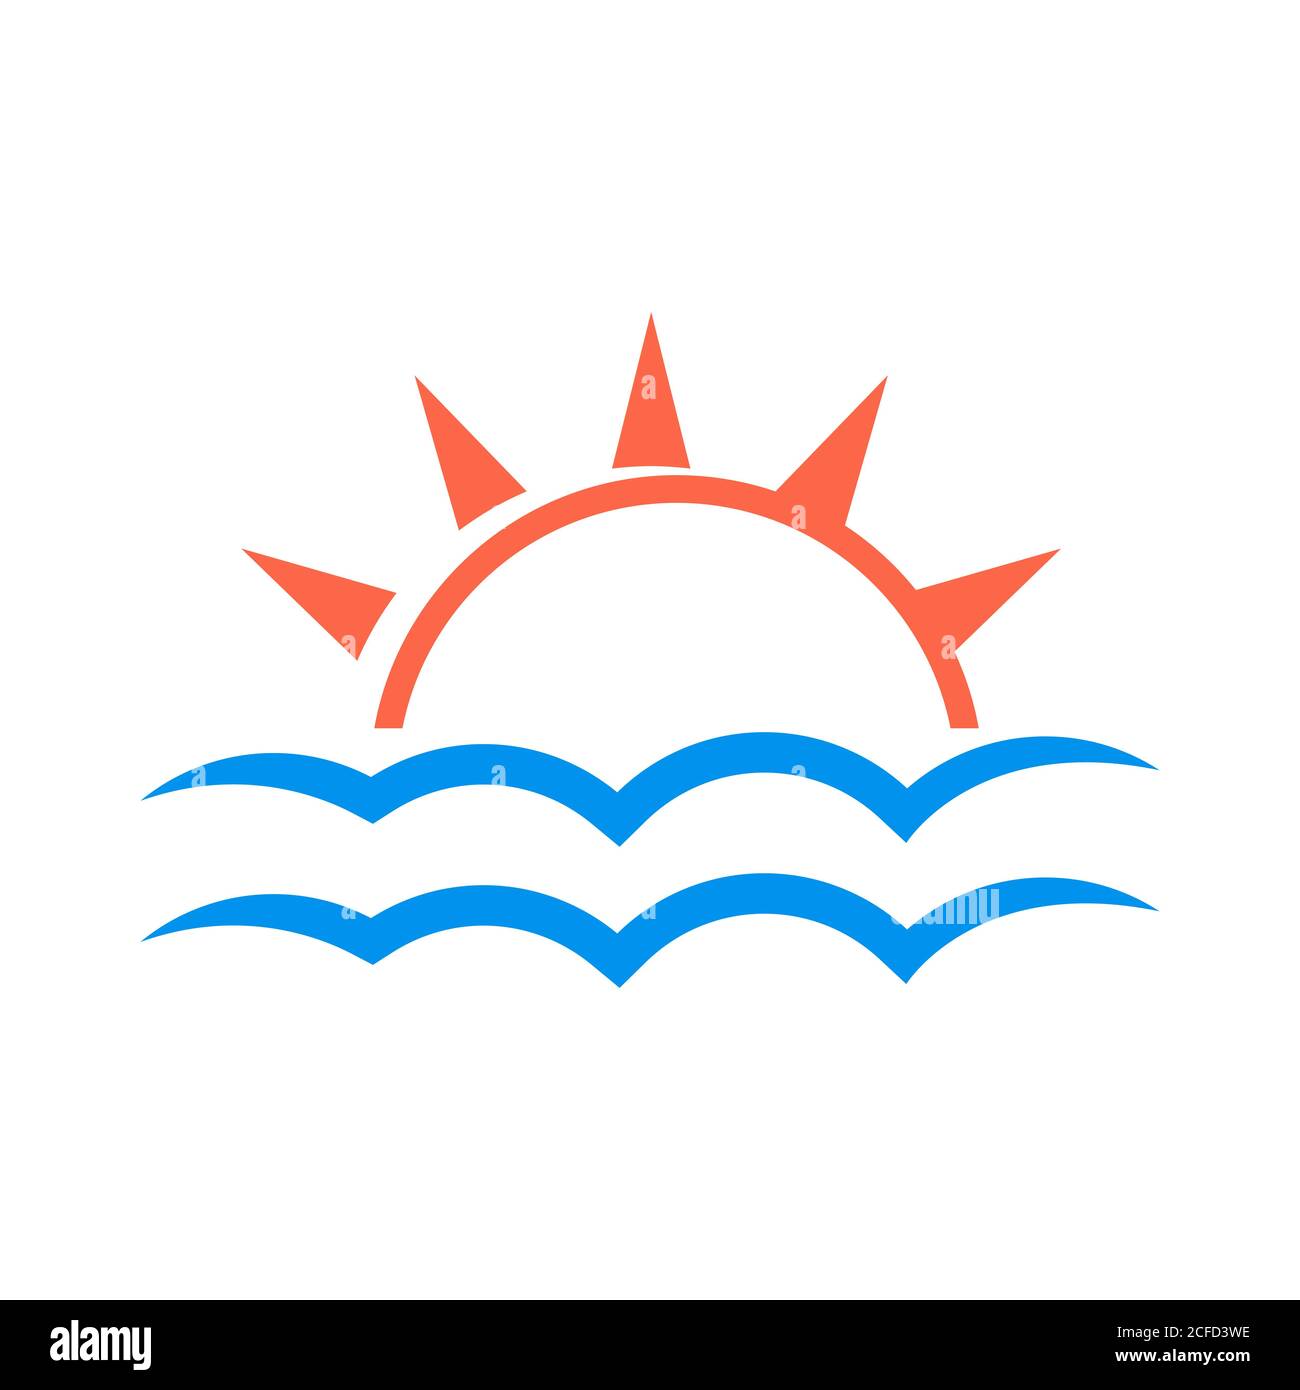 Einfache nützliche helle Sonne und Wolke Logo einen klaren Himmel Icon Design Vektor Grafik Konzept Illustrationen Stock Vektor